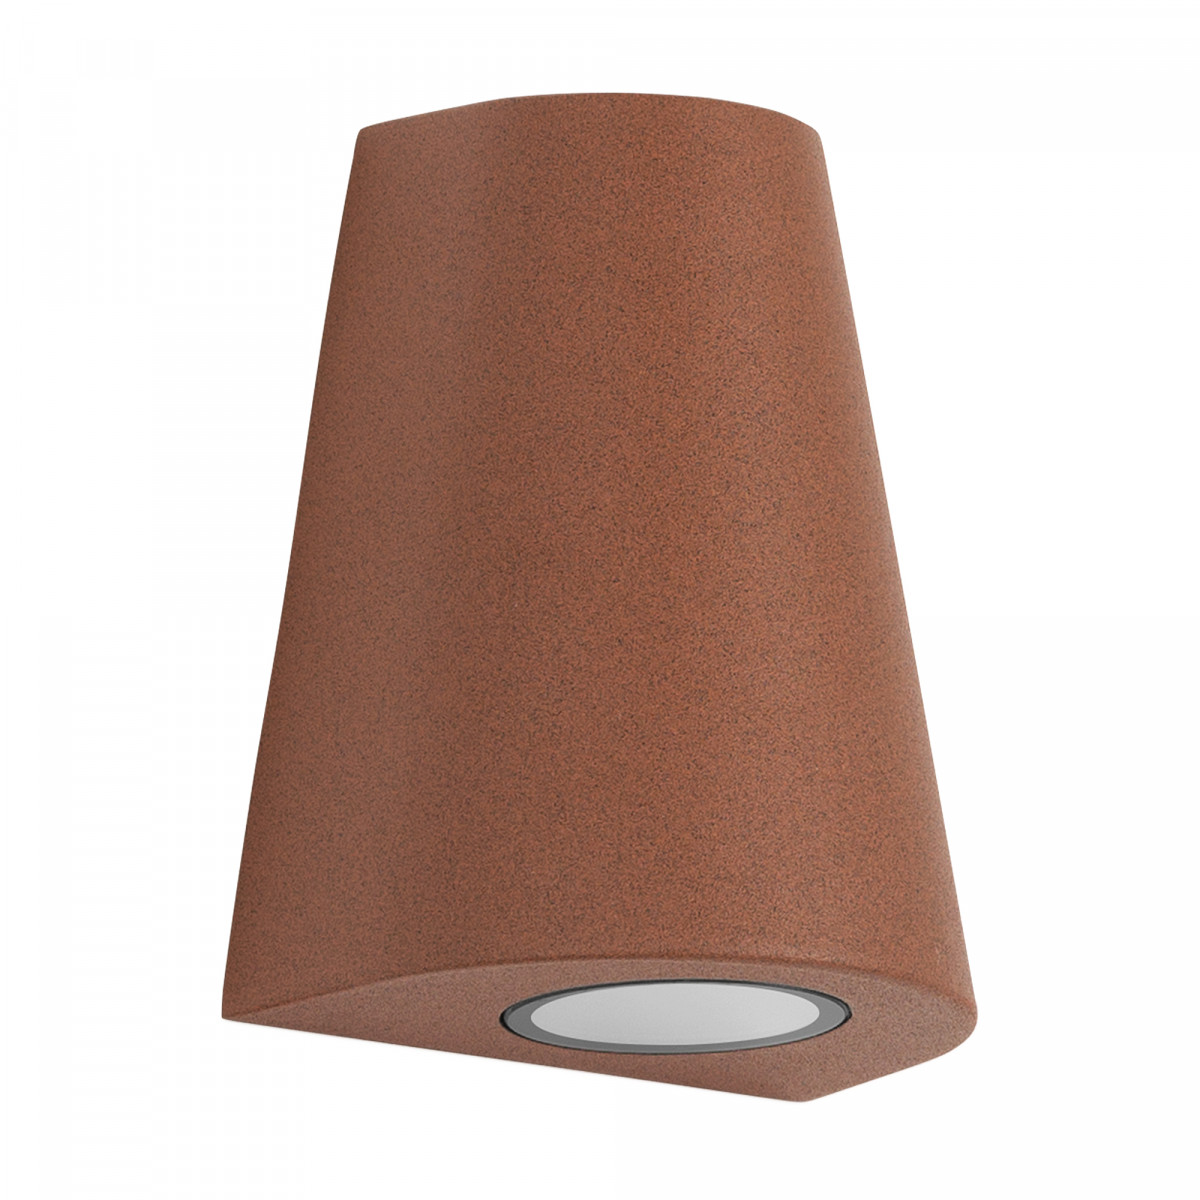 Buitenlamp Cone Downlighter, moderne wandverlichting voor indoor & outdoor, conisch vormgegeven in mooie roest kleur, corten staal kleur, KS kwaliteitsverlichting